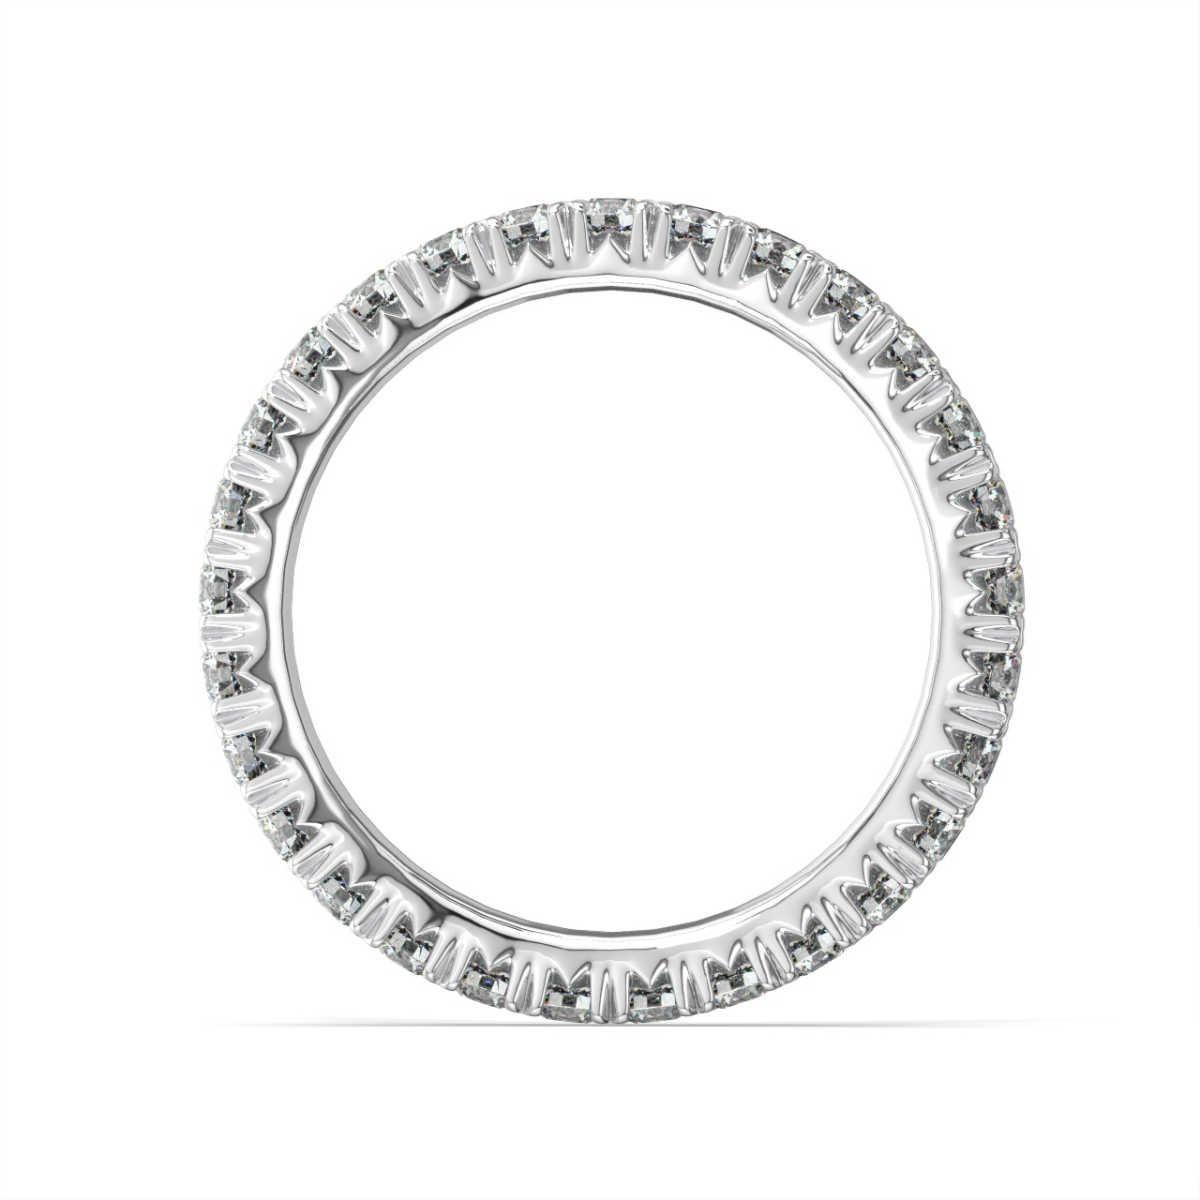 Dieses atemberaubende Ewigkeitsband zeichnet sich durch französische Pave-Diamanten aus, eine Art der Fassung, die es dem Licht ermöglicht, unsere perfekt aufeinander abgestimmten Diamanten aus vielen Winkeln zu erreichen. Er funkelt wie kein